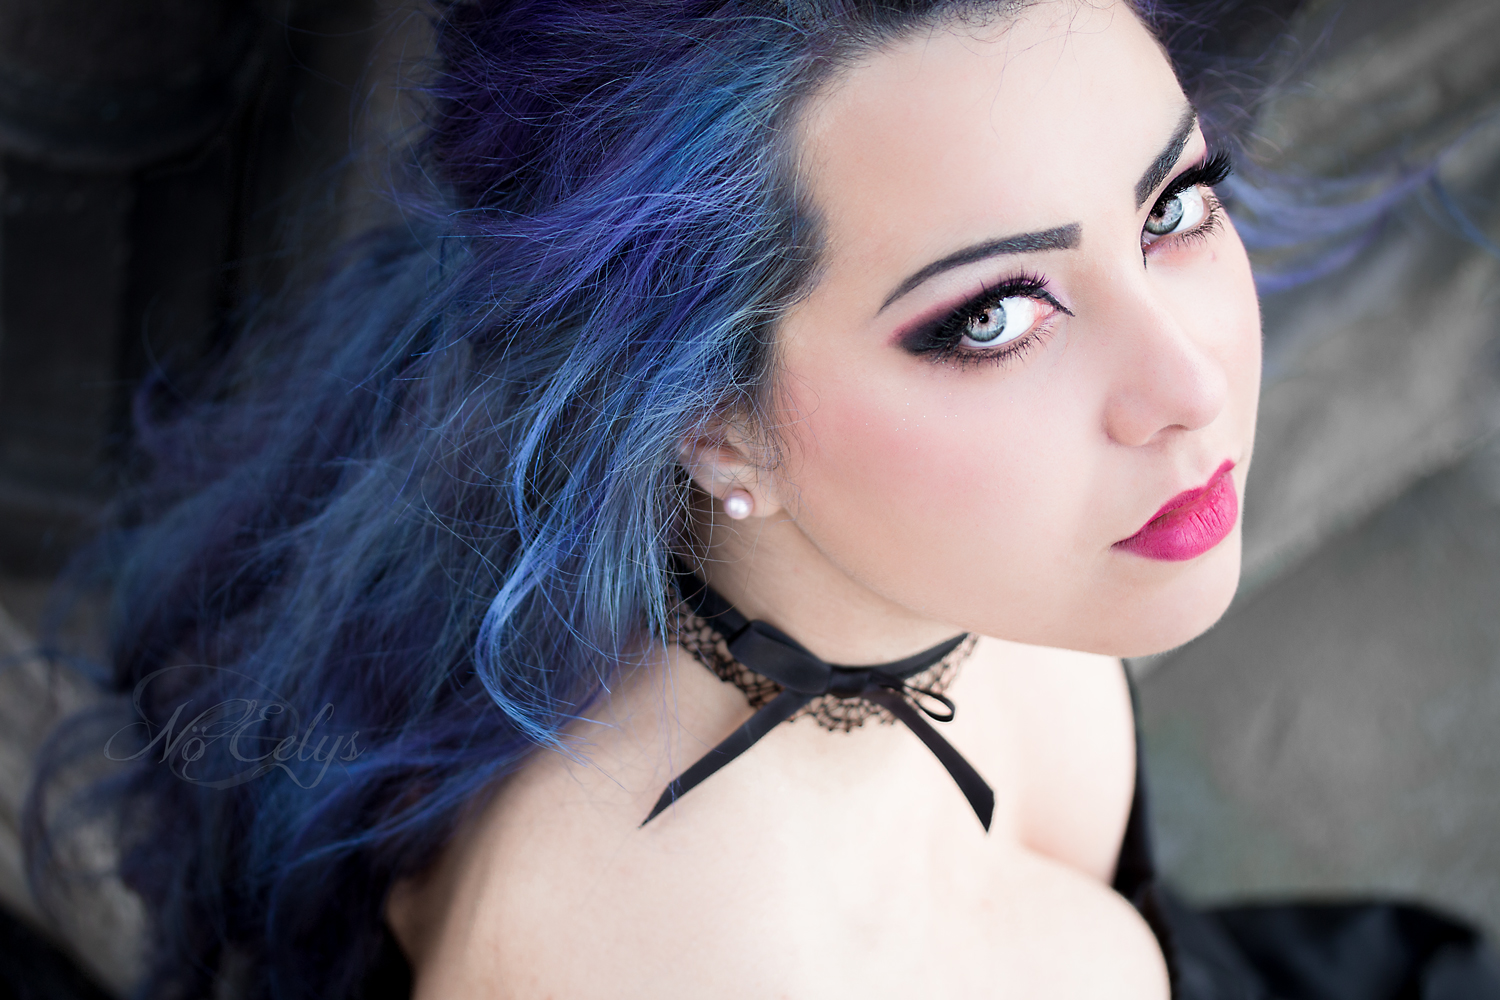 Portrait alternatif cheveux bleus par Nö Eelys Photo